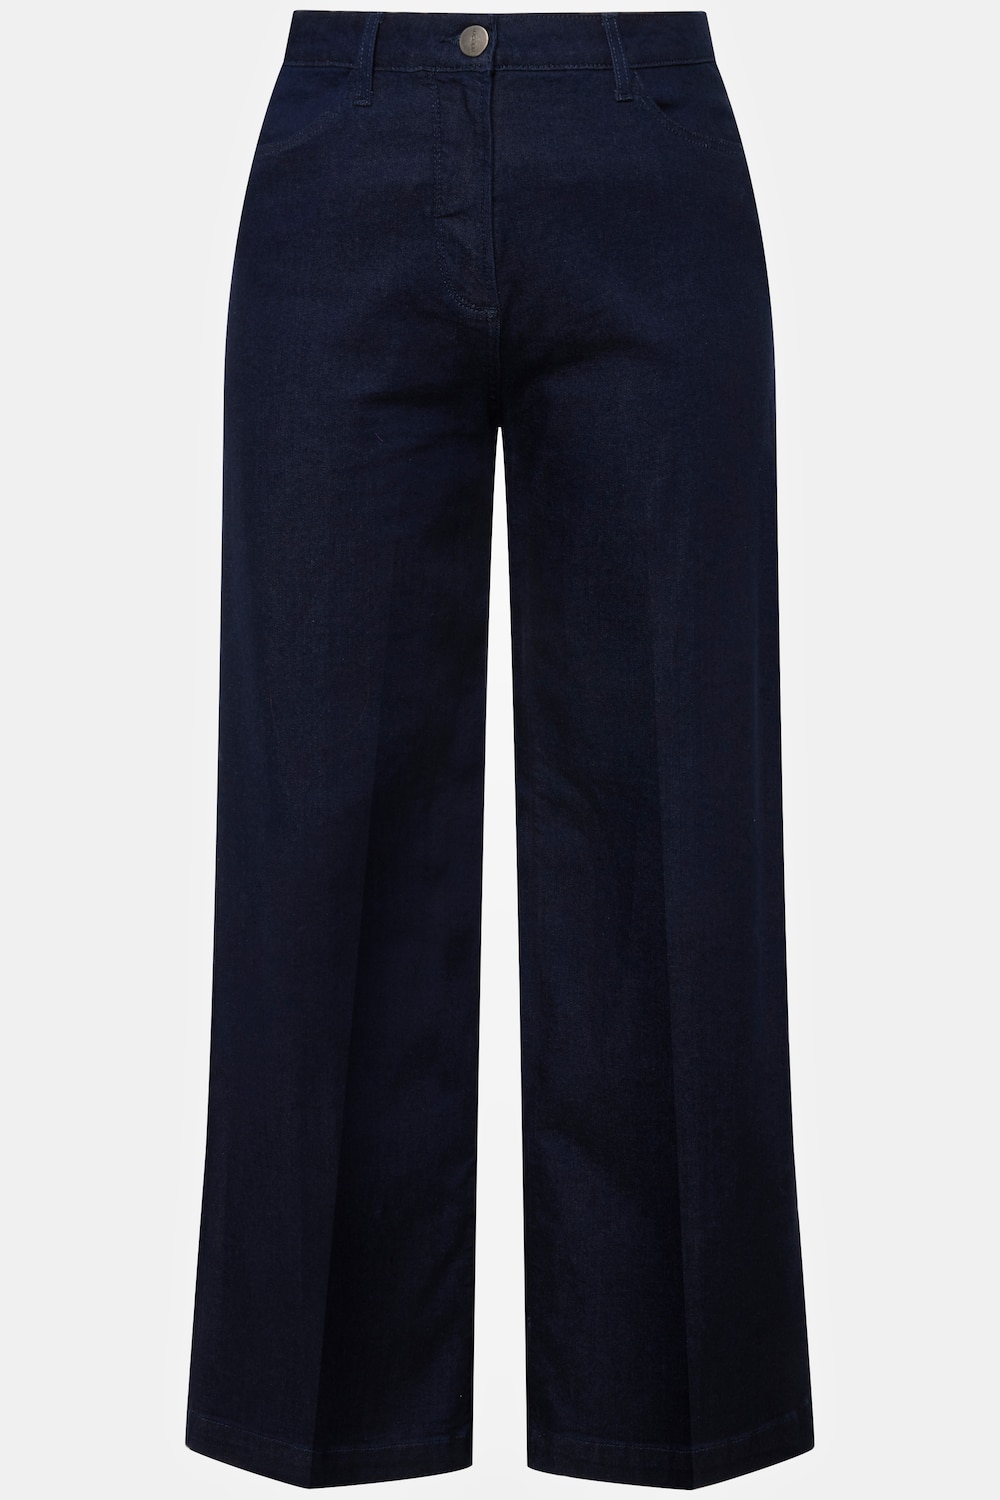 Grote Maten jeans, Dames, blauw, Maat: 60, Katoen/Synthetische vezels, Ulla Popken